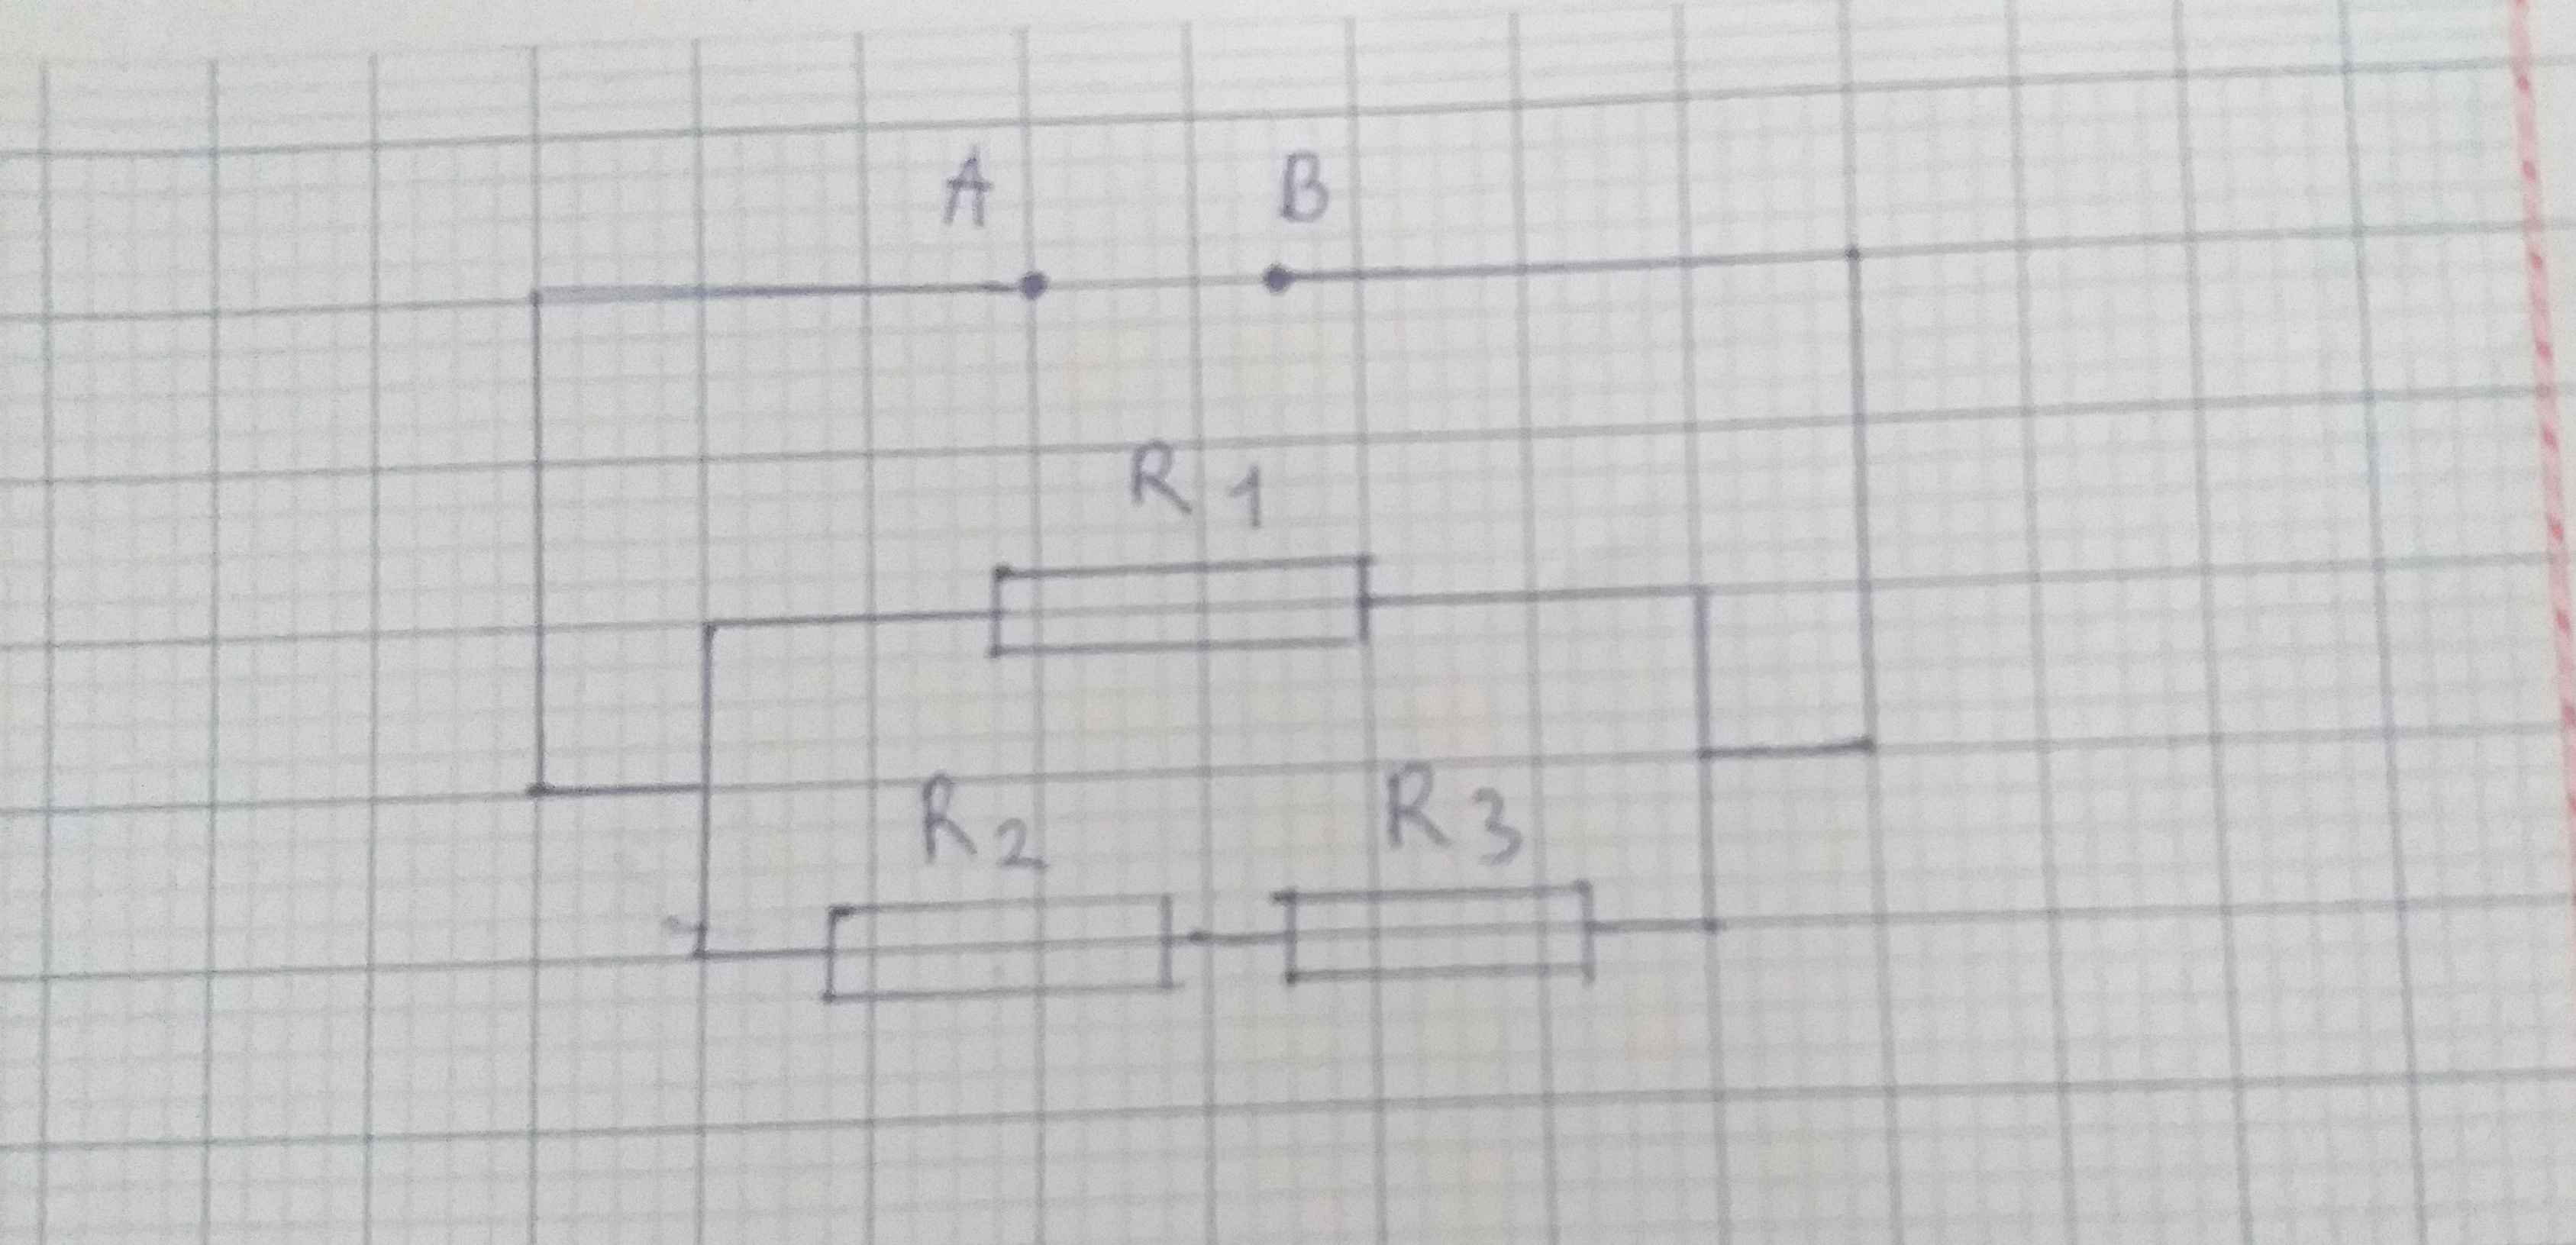 Cho mạch điện với R1=10 ôm, R2=4 ôm, R3=6 ôm và r1=6 ôm - một mạch điện đầy thách thức đang chờ đợi bạn khám phá. Bạn sẽ có cơ hội để nghiên cứu về mạch điện một cách chính xác và hiểu rõ hơn về cấu trúc điện học. Hãy xem hình ảnh liên quan để tìm kiếm các cách xây dựng mạch điện đầy thú vị.